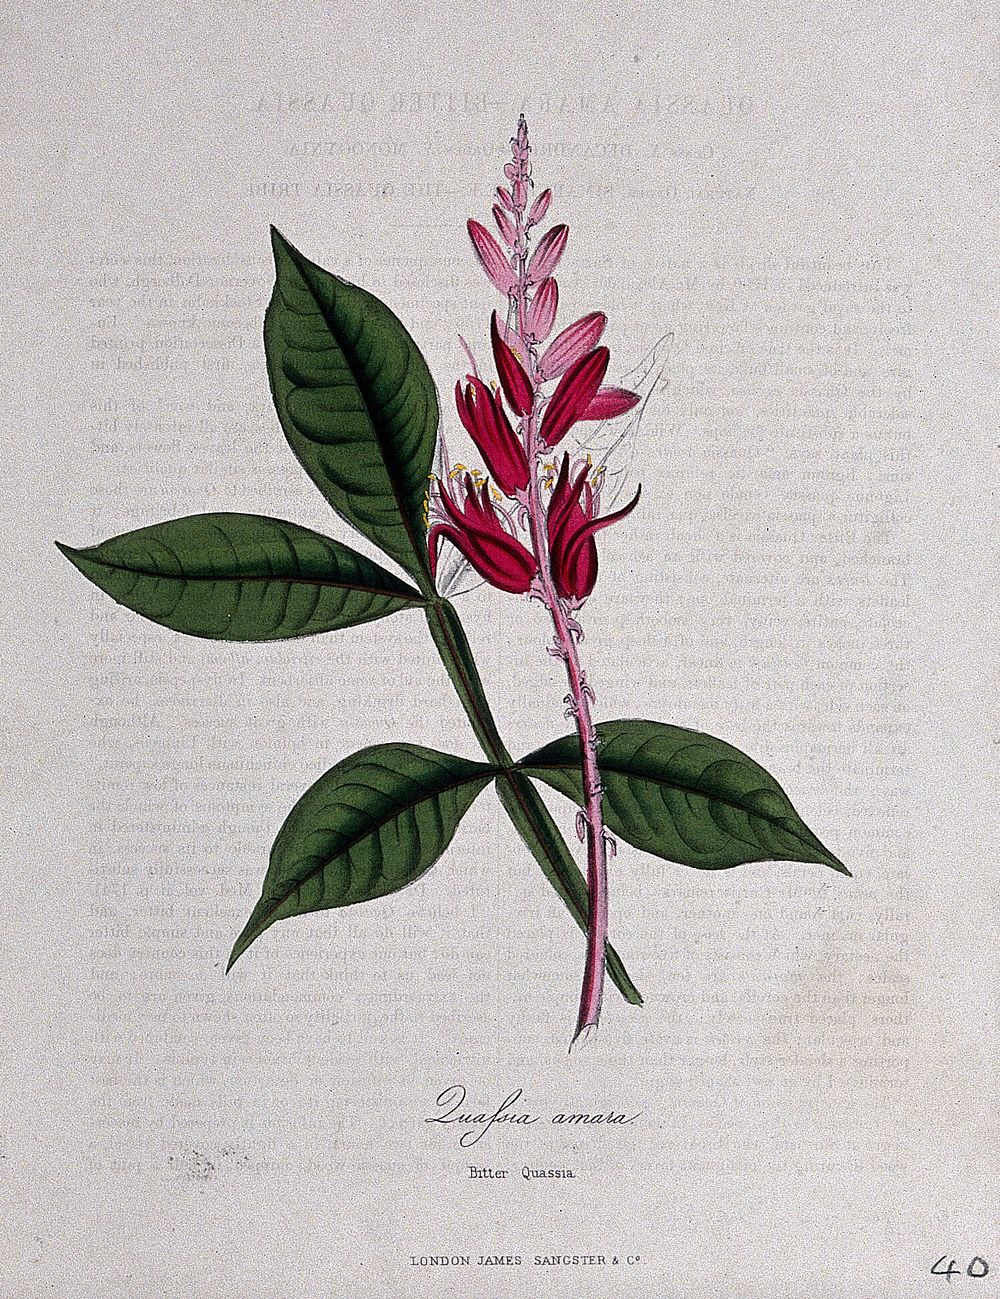 Surinam quassia wood (Quassia amara): flowering stem and leaf. Coloured zincograph, c. 1853, after M. Burnett.